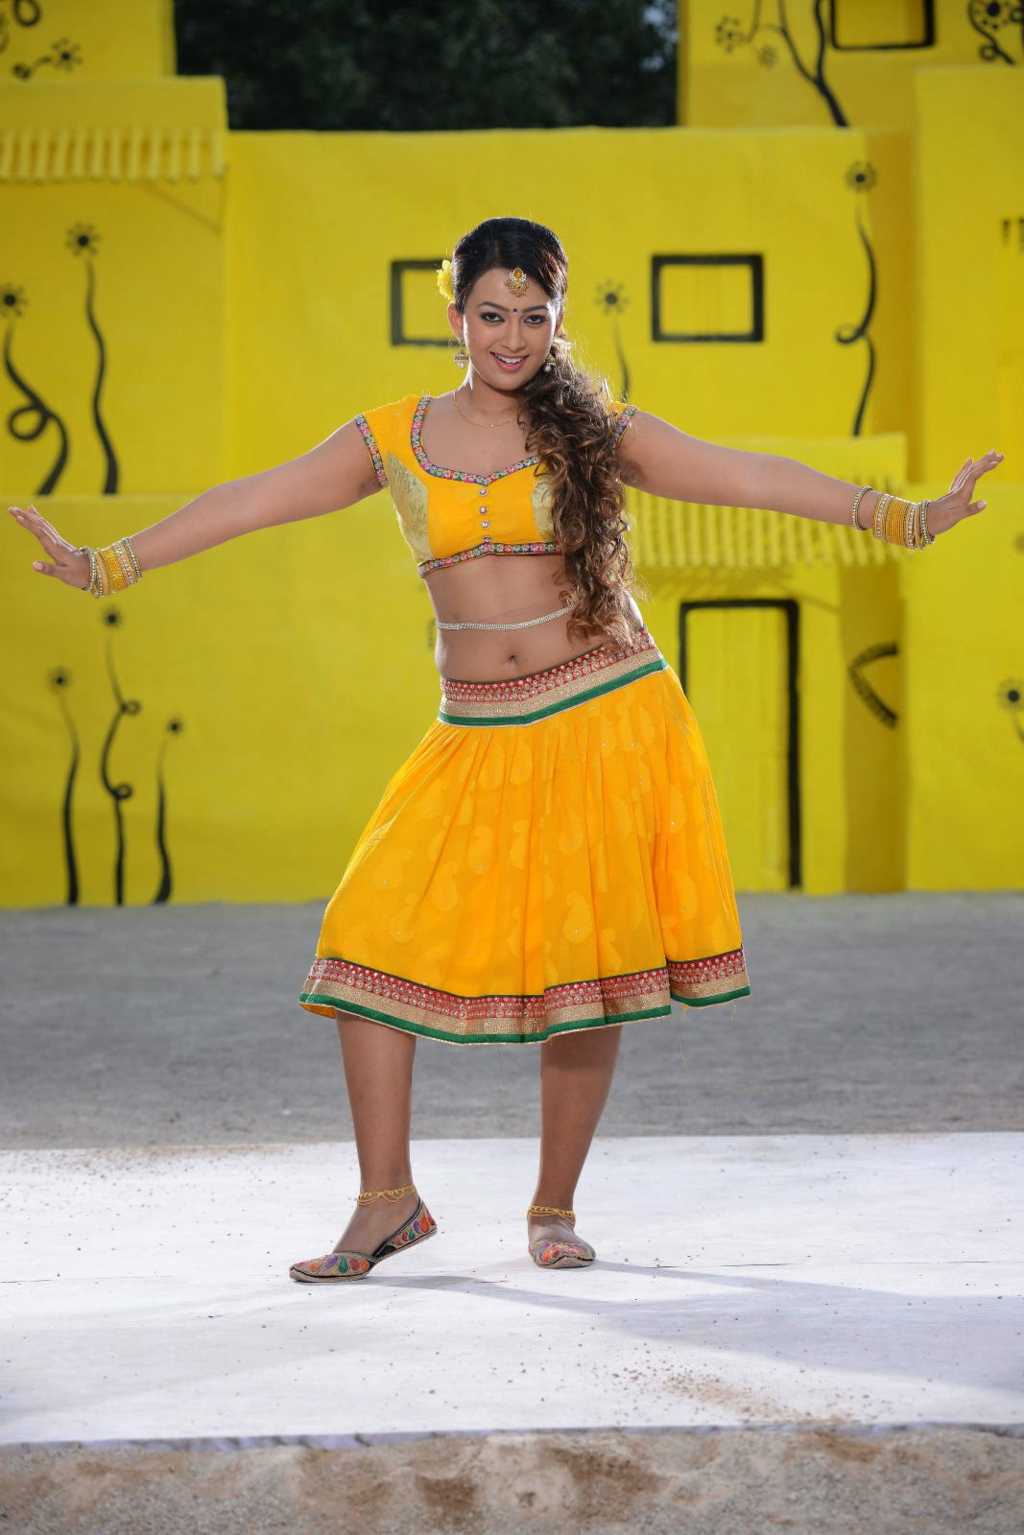 Ester Noronha Navel Show In Half Saree Stills From Bhimavaram Bullodu Movie 10 Aaaacbw Aaaaadw